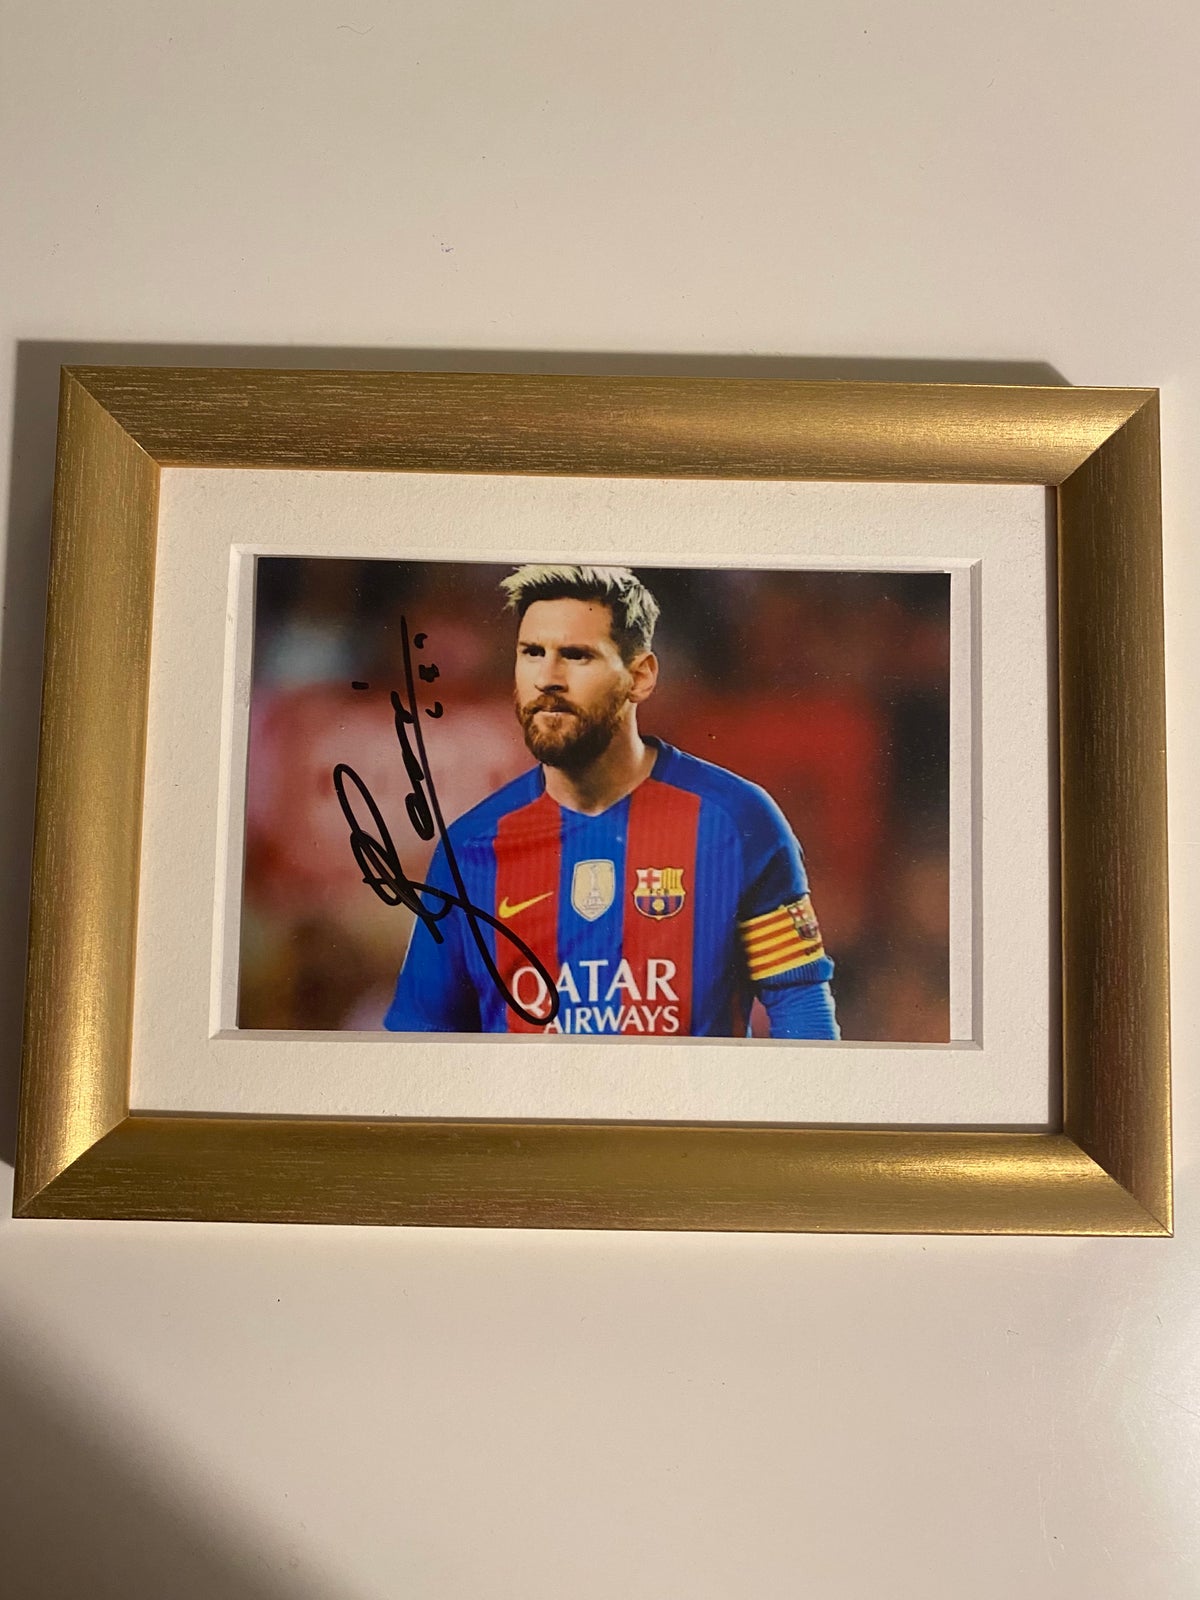 Fodboldtrøje, Fodbold autografer med Messi, Pelé og Henry